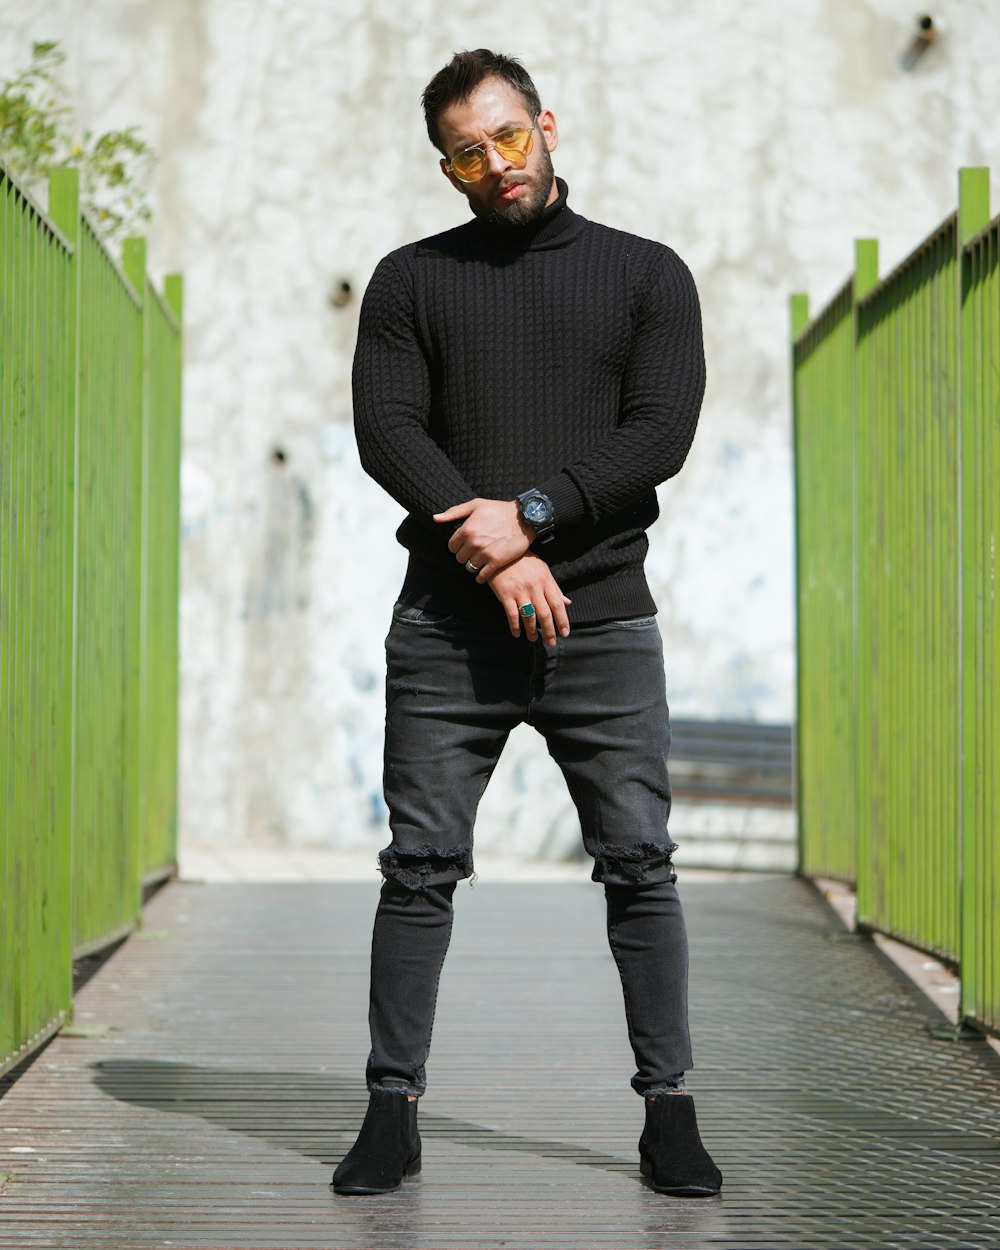 Uomo in maglione nero e pantaloni neri in piedi accanto alla parete verde  durante il giorno foto – Ritratto Immagine gratuita su Unsplash